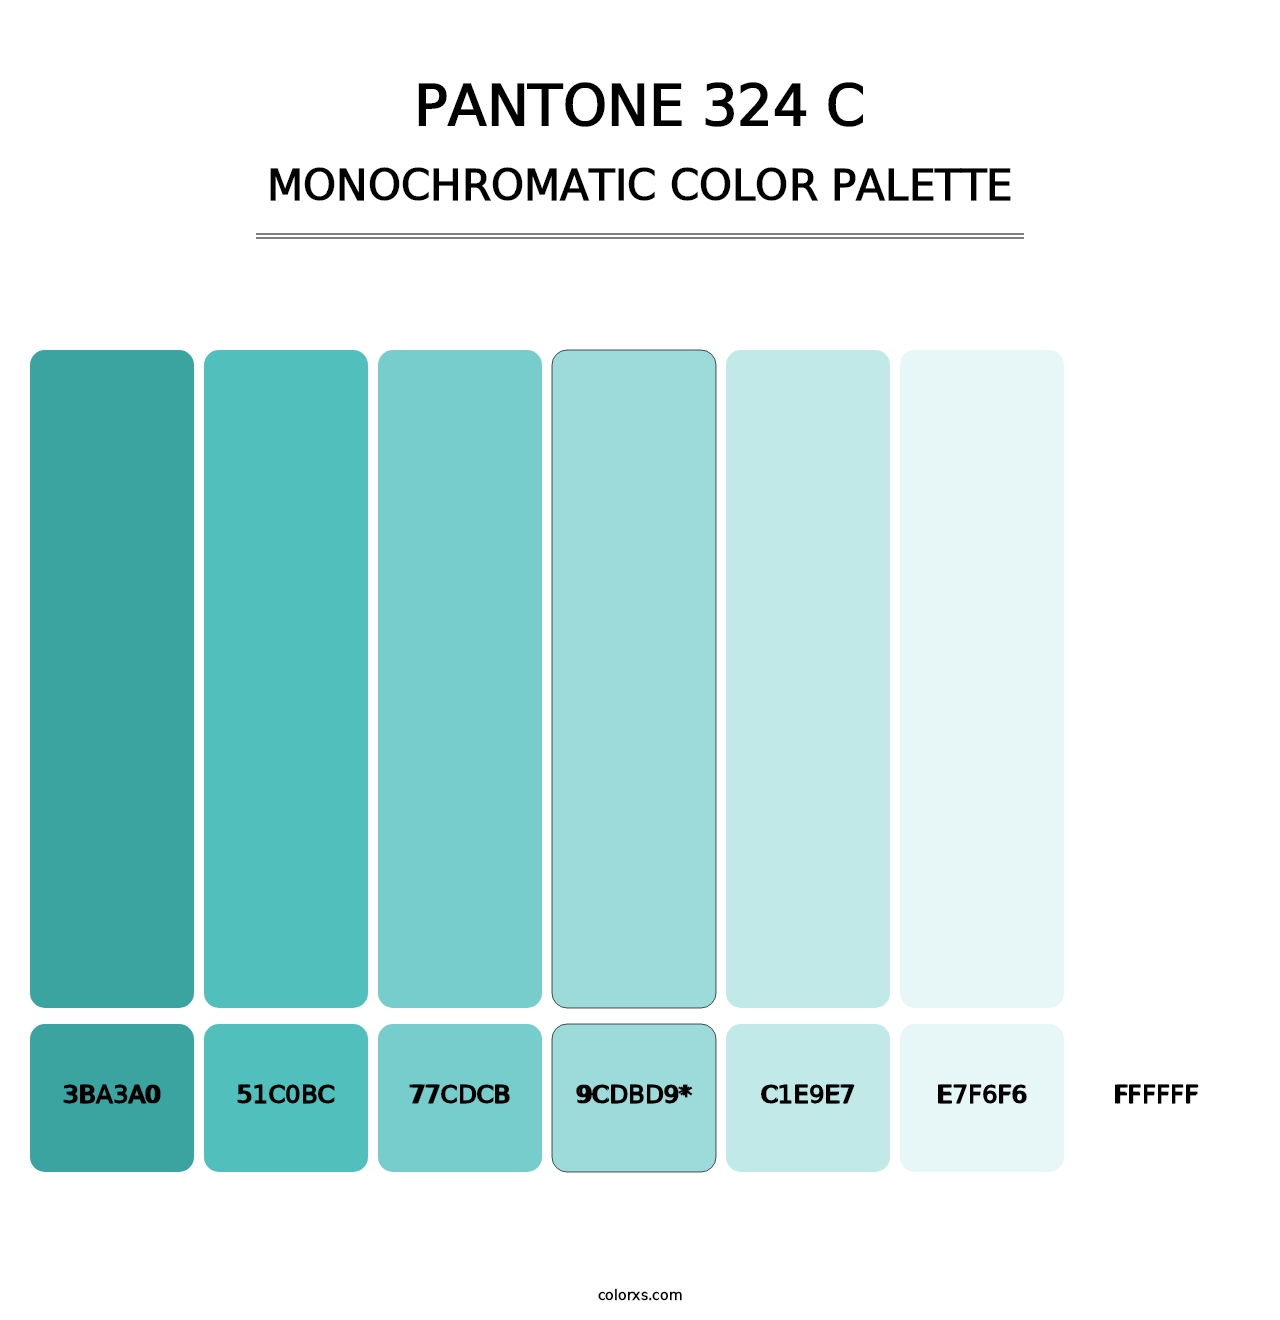 PANTONE 324 C - Monochromatic Color Palette